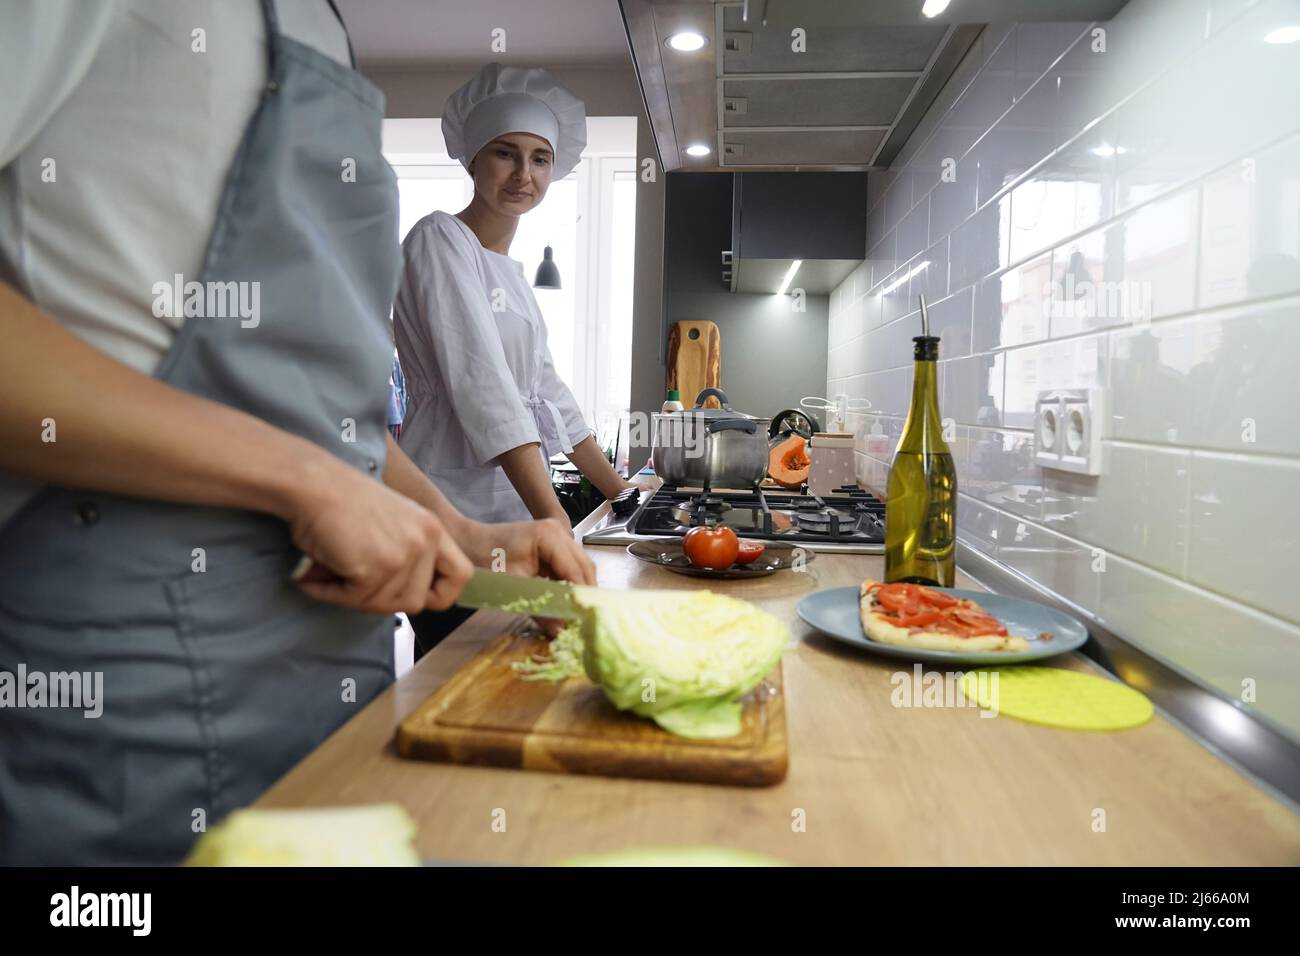 Deux chefs dans la cuisine du restaurant préparent la nourriture. Le chef est habillé d'une tunique blanche et d'un chapeau de chef. Banque D'Images